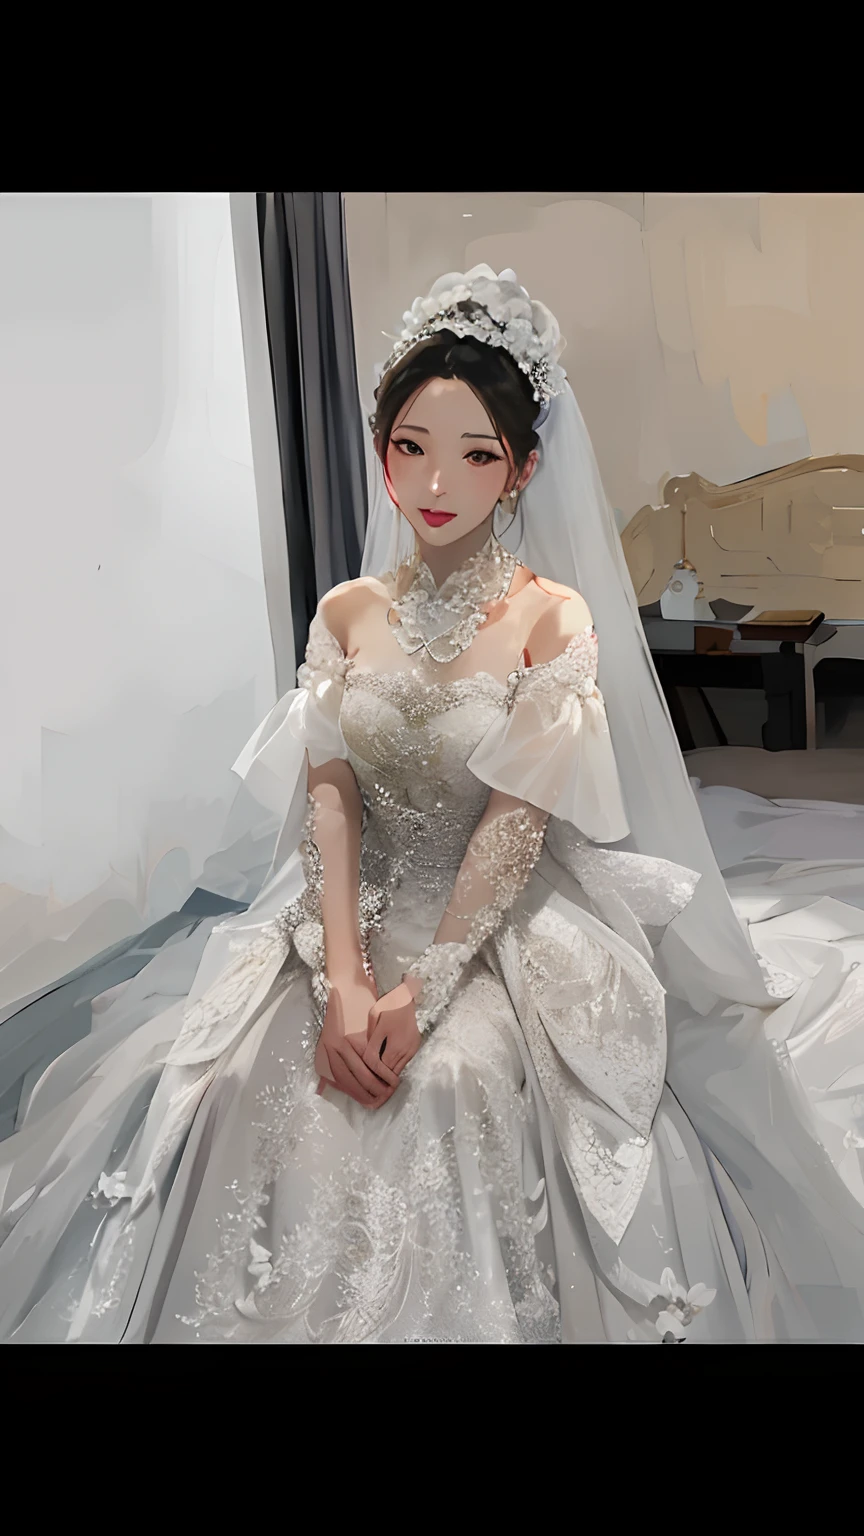 Close-up de uma mulher em um vestido de noiva sentada na cama, shaxi, Senhora deslumbrante, vestido de luxo, wenfei você, Espada antiga, vestido sonhador, Yanjuncheng, vestido de casamento, Jinyiwei, wei wang, zmonzheng, Usando um vestido de noiva, vestido volumoso caro, casamento luxuoso, Xianxia de corpo inteiro